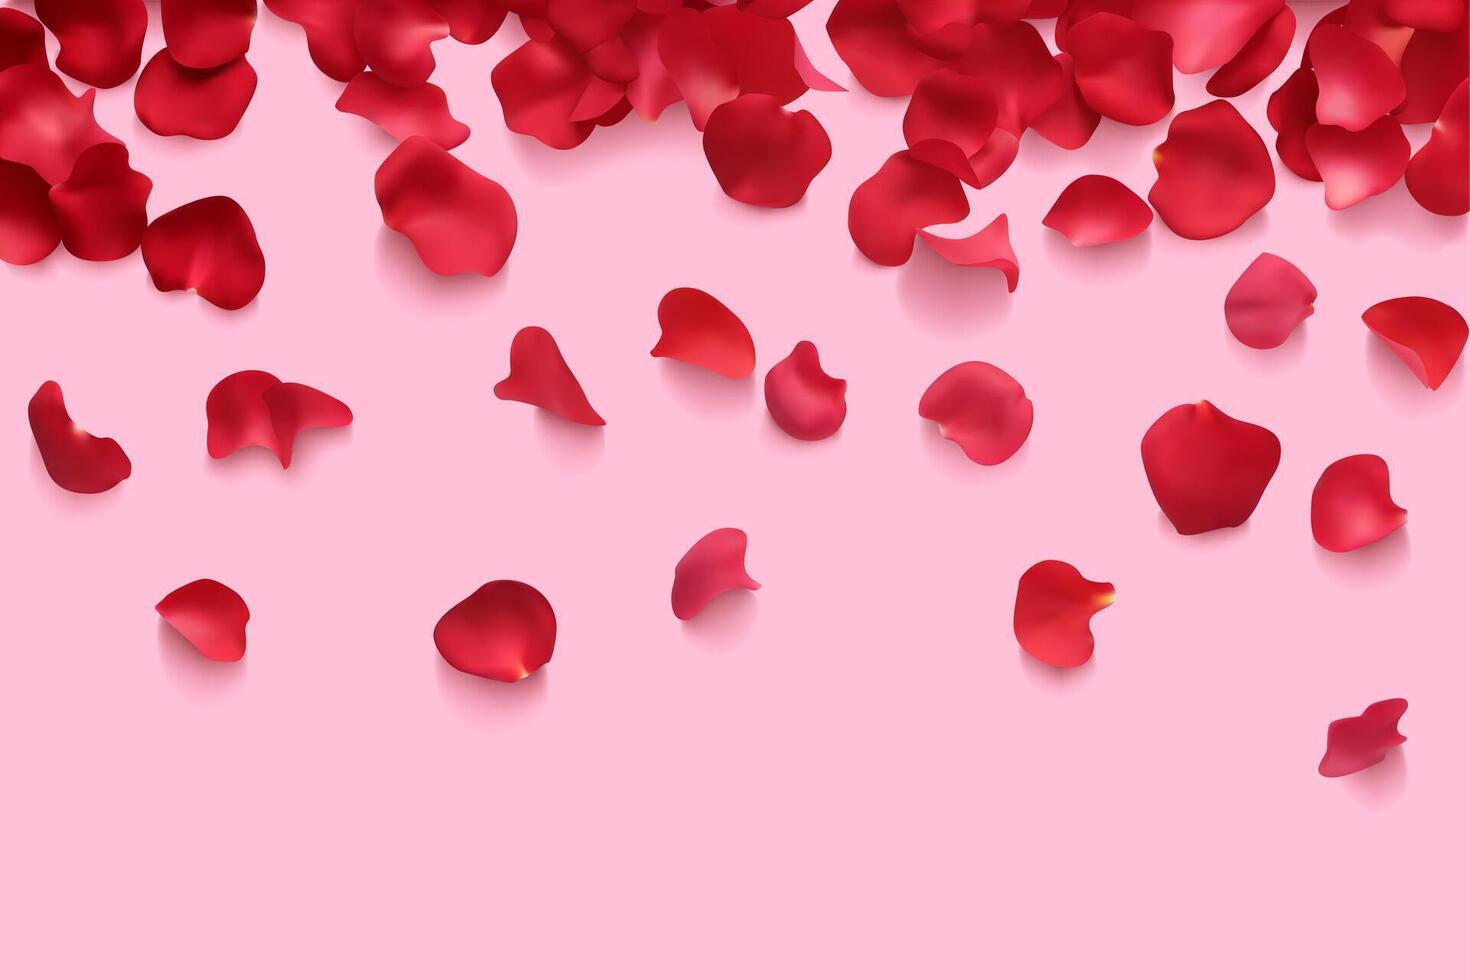 Rosa tulipán rojo pétalos flor antecedentes fiesta romántico saludo rosado bandera 3d realista vector